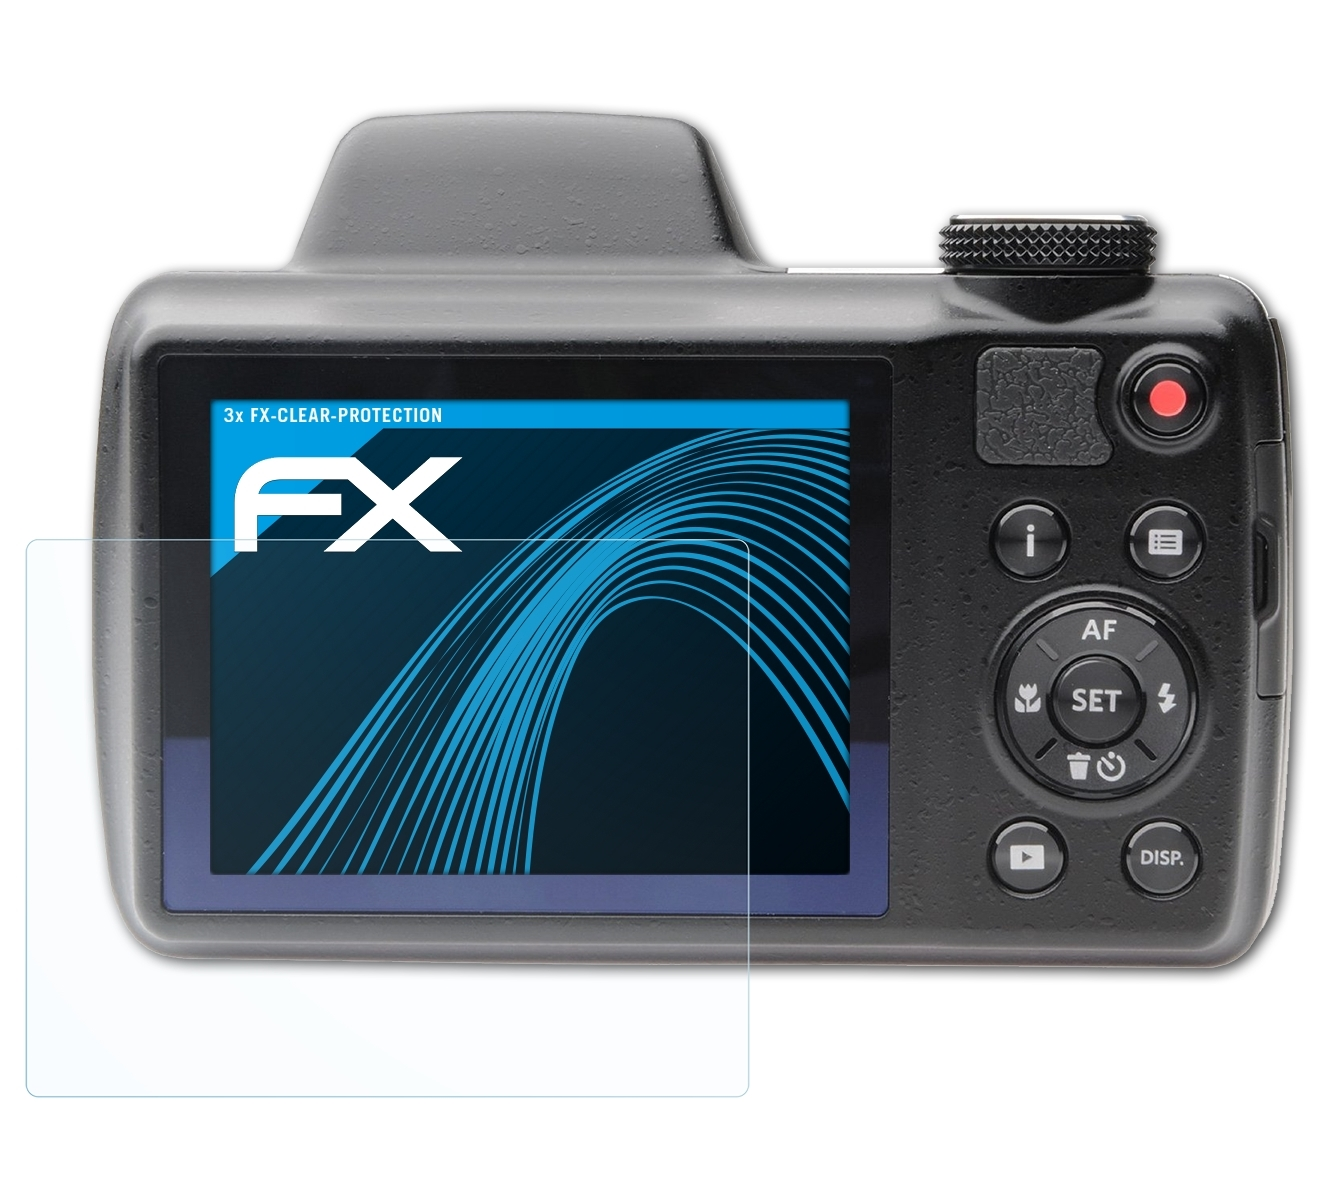 ATFOLIX 3x FX-Clear Kodak Displayschutz(für AZ525) PixPro